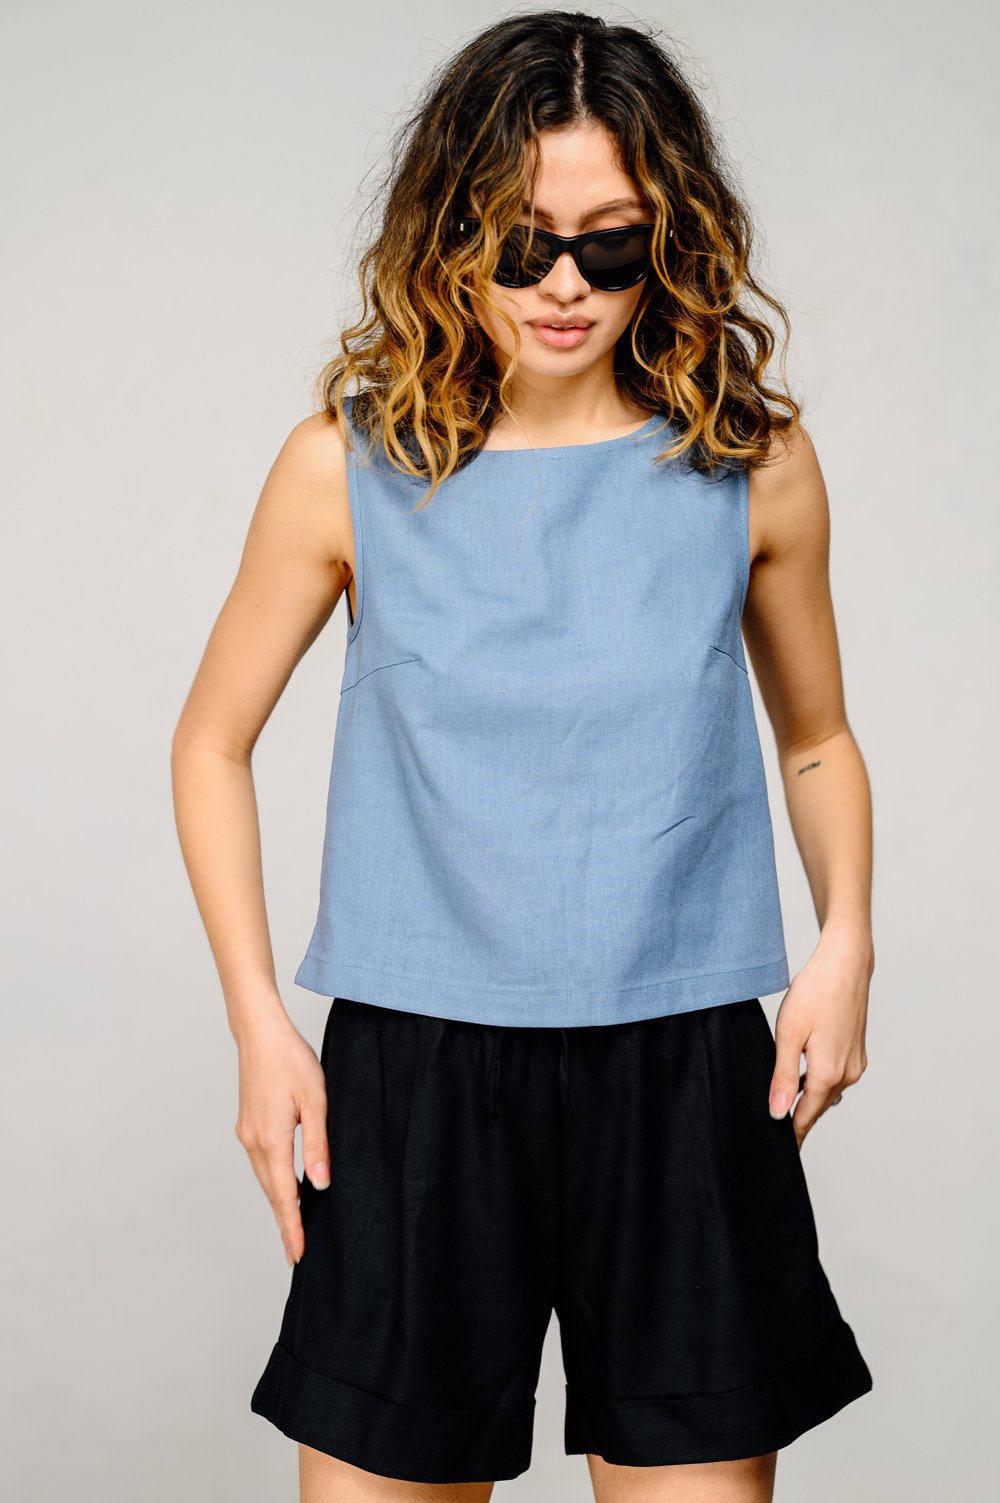 Grey-blue linen sleeveless top